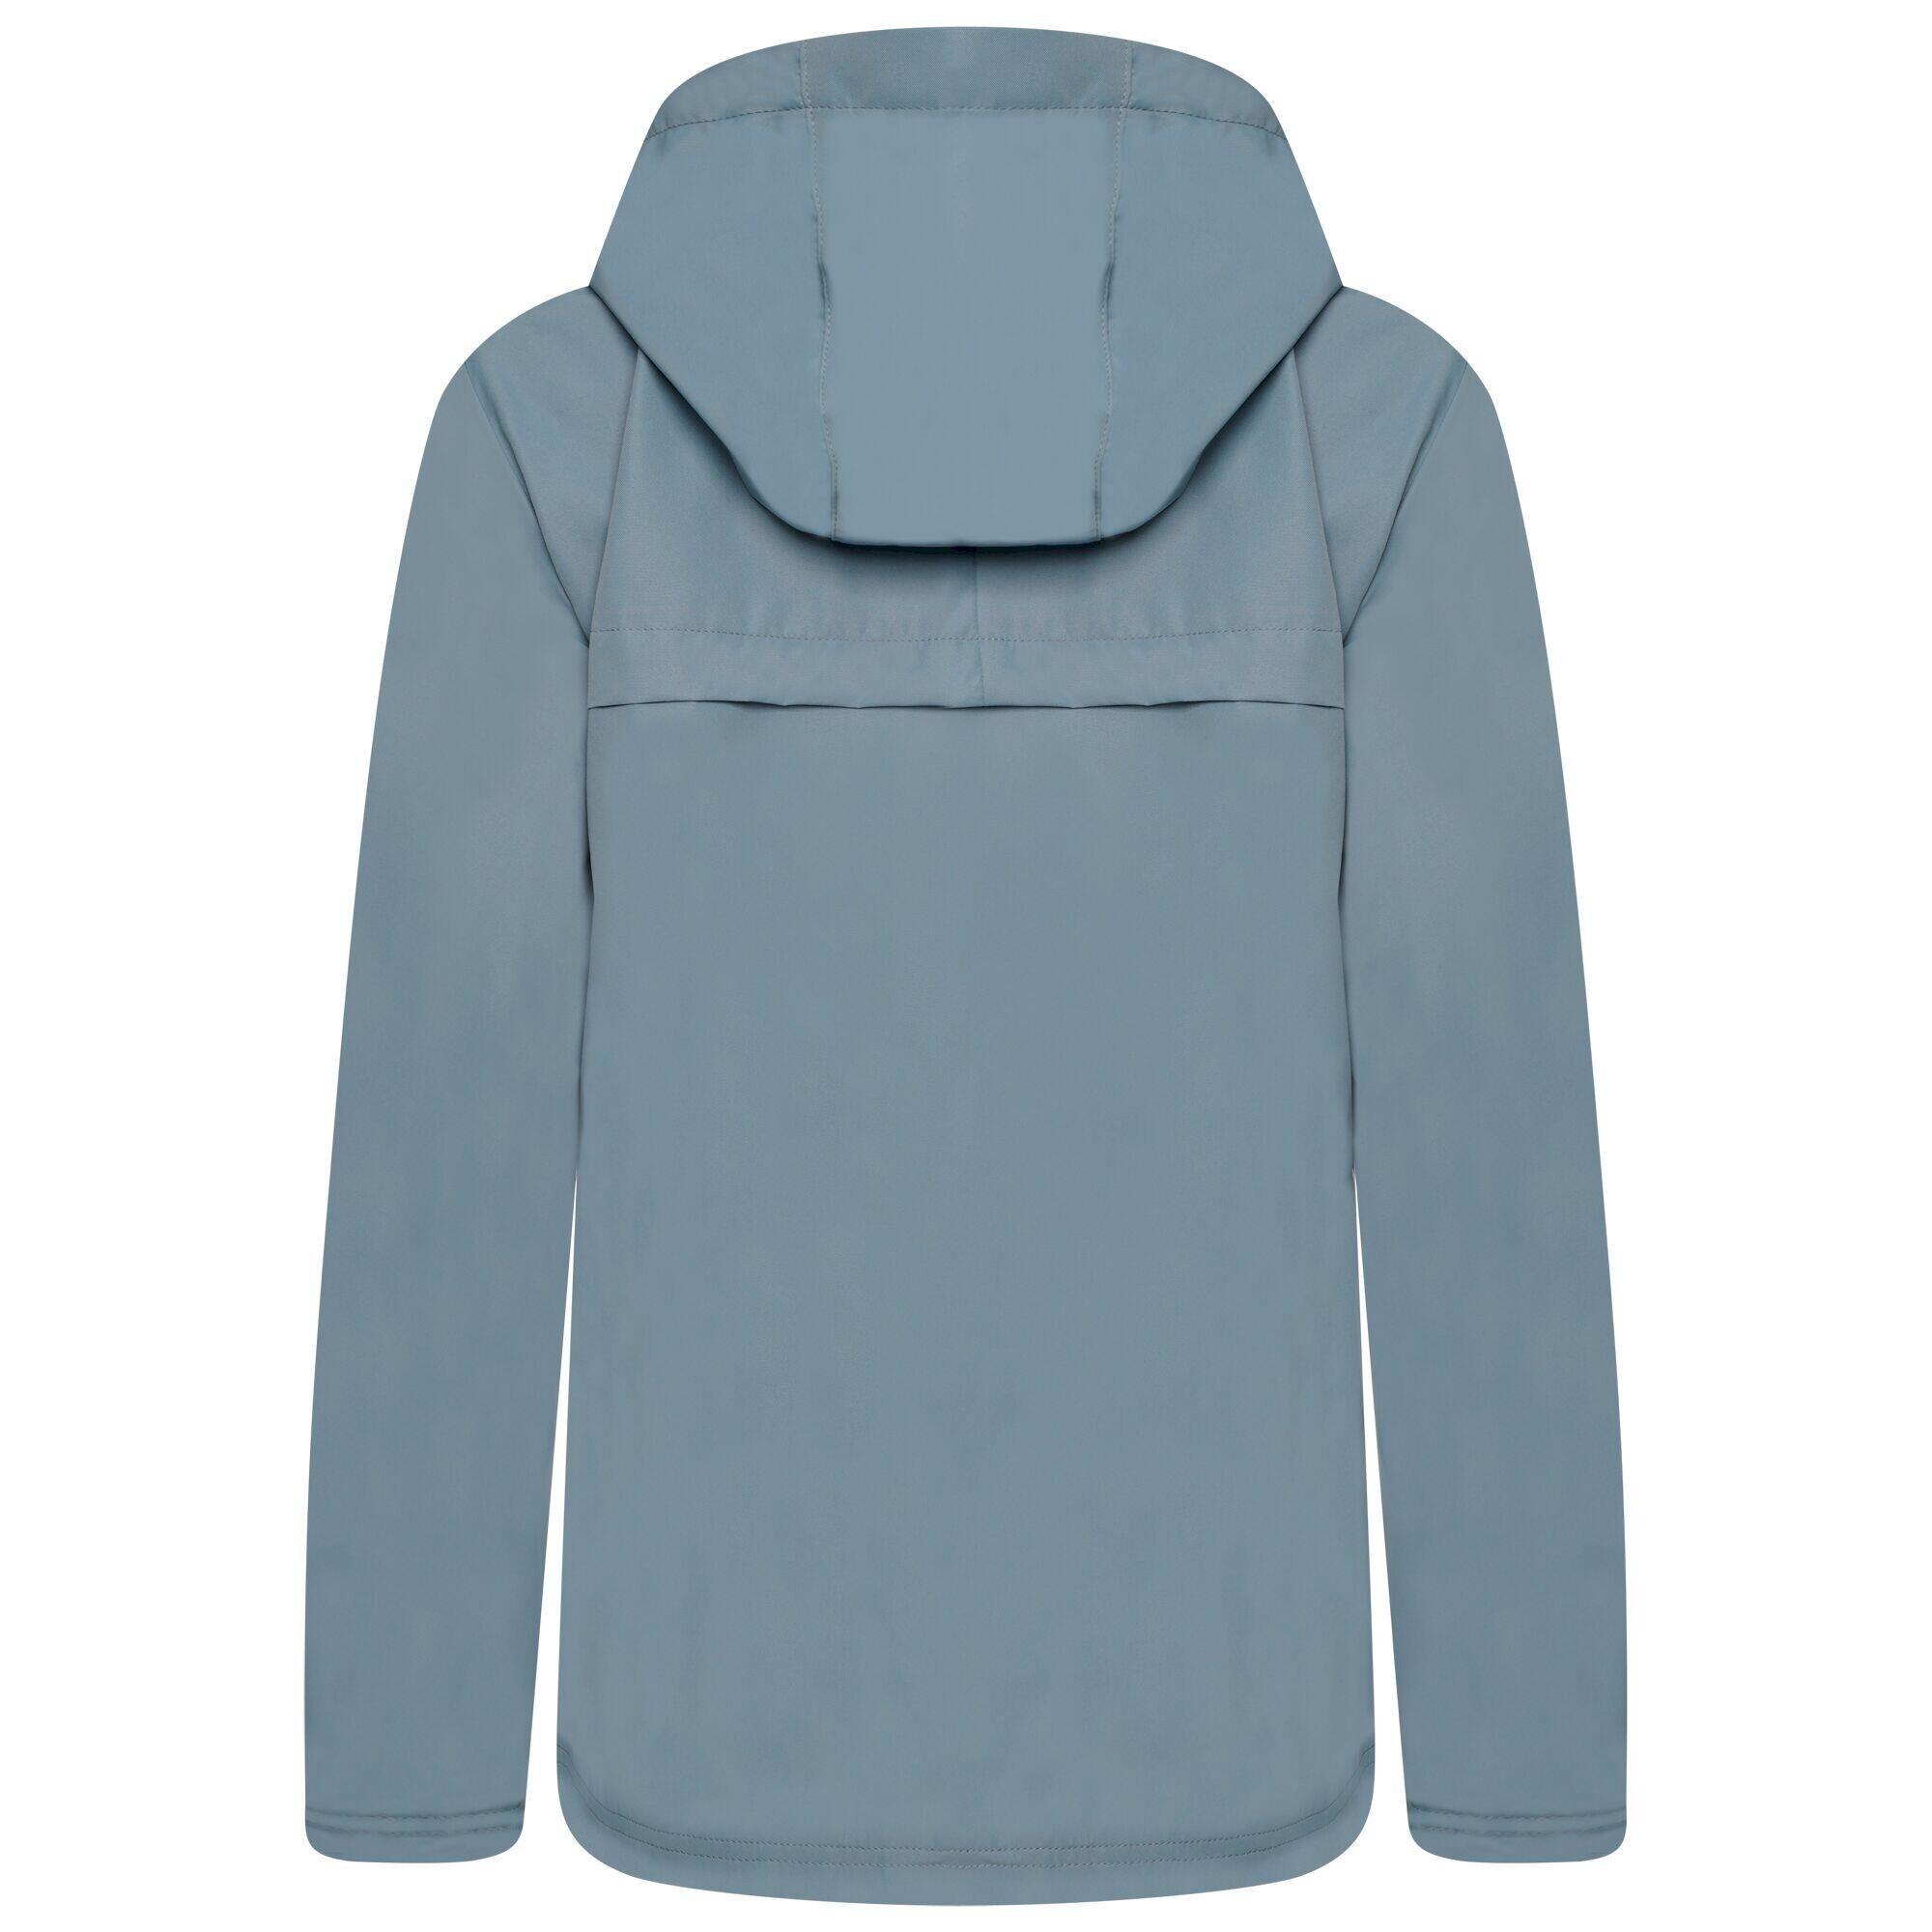 Womens/Ladies Crystallize Waterproof Jacket (Bluestone) 2/5